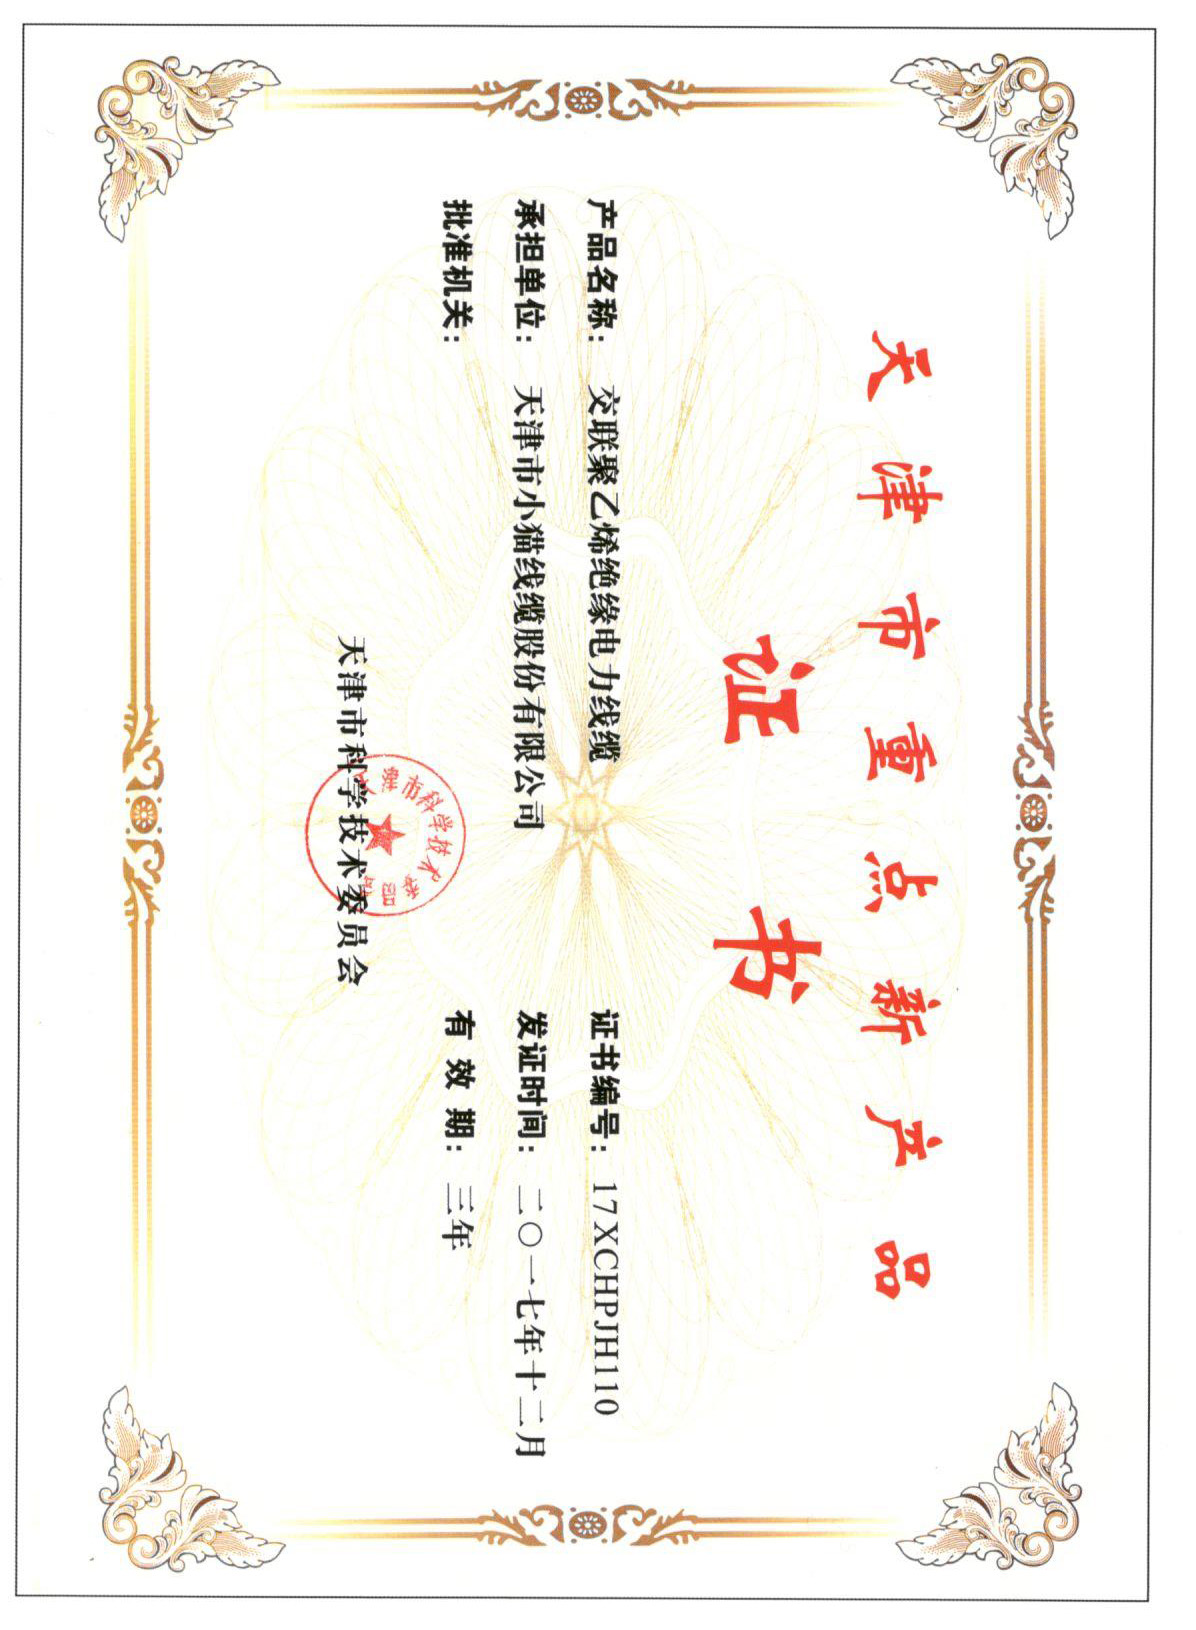 天津市重点新产品证书